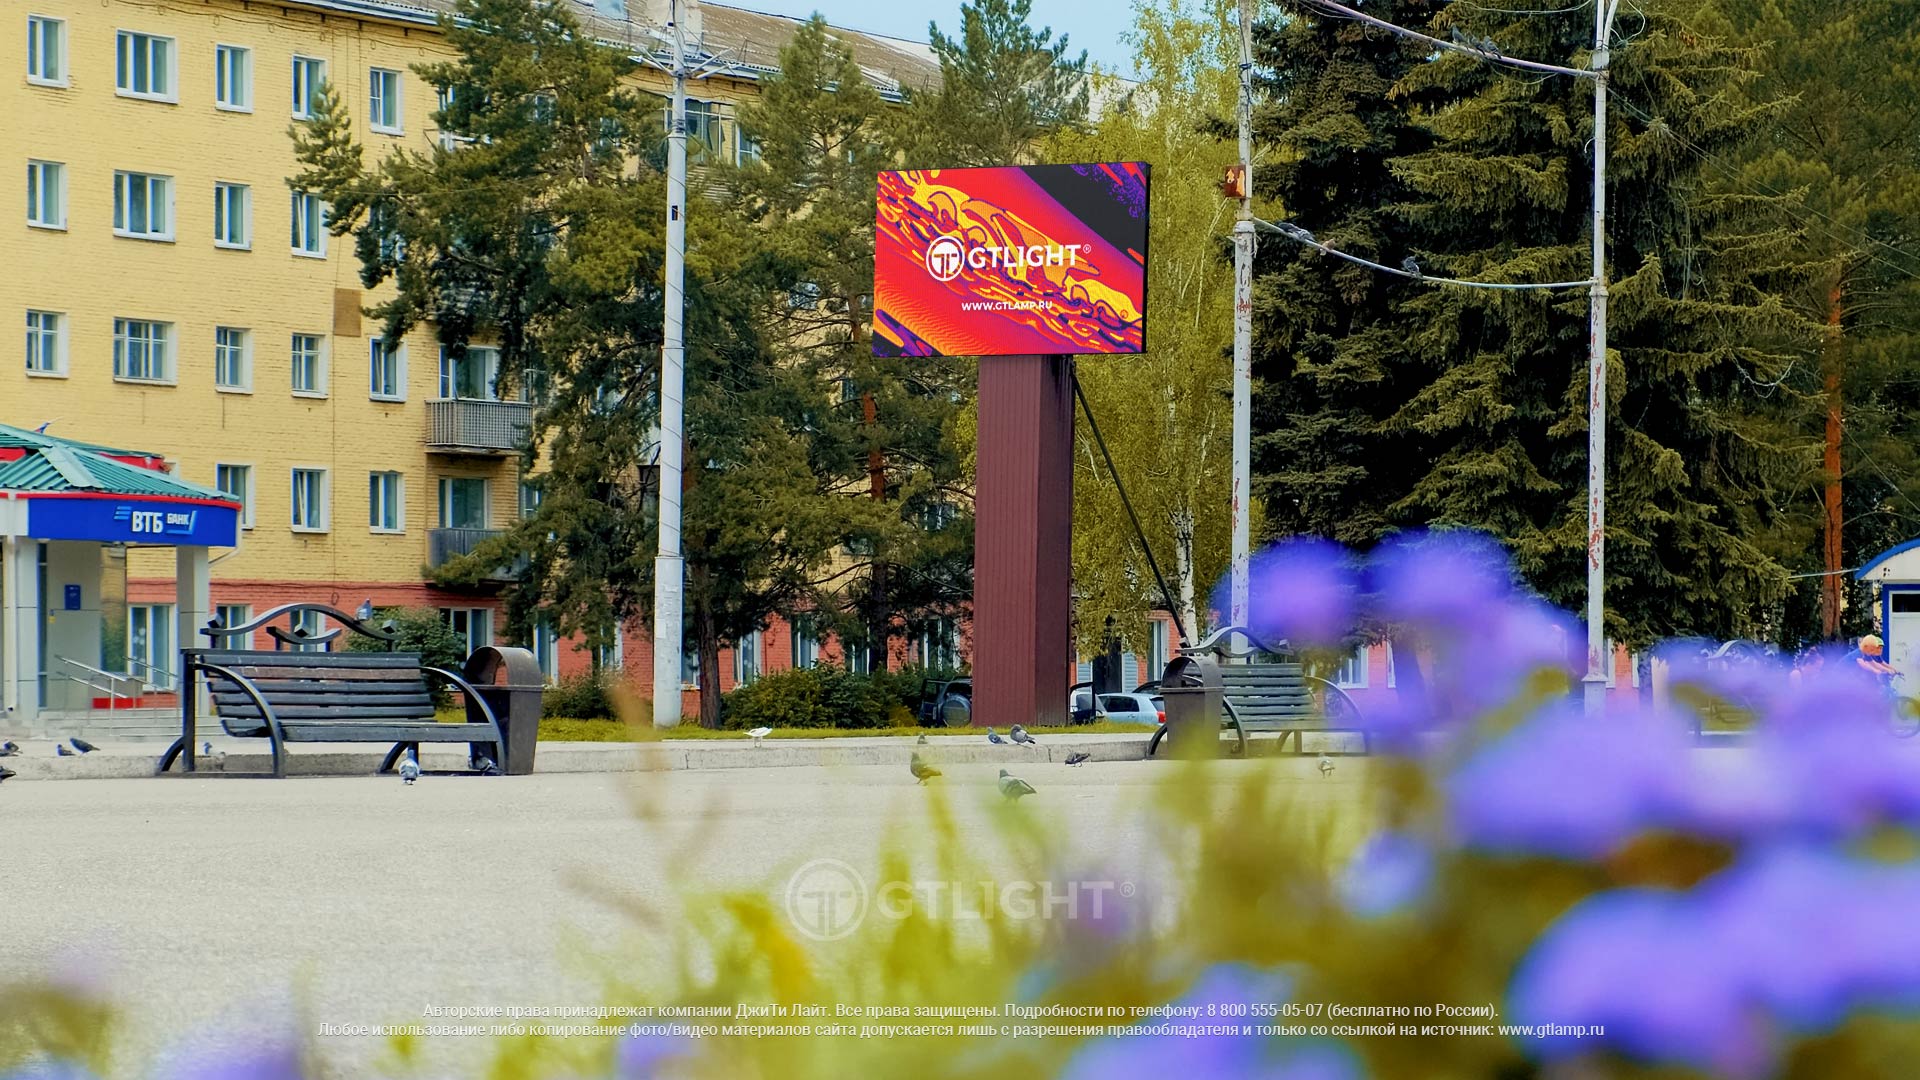 Светодиодный уличный экран для рекламы, Осинники, рекламное агентство «Площадь», фото 3